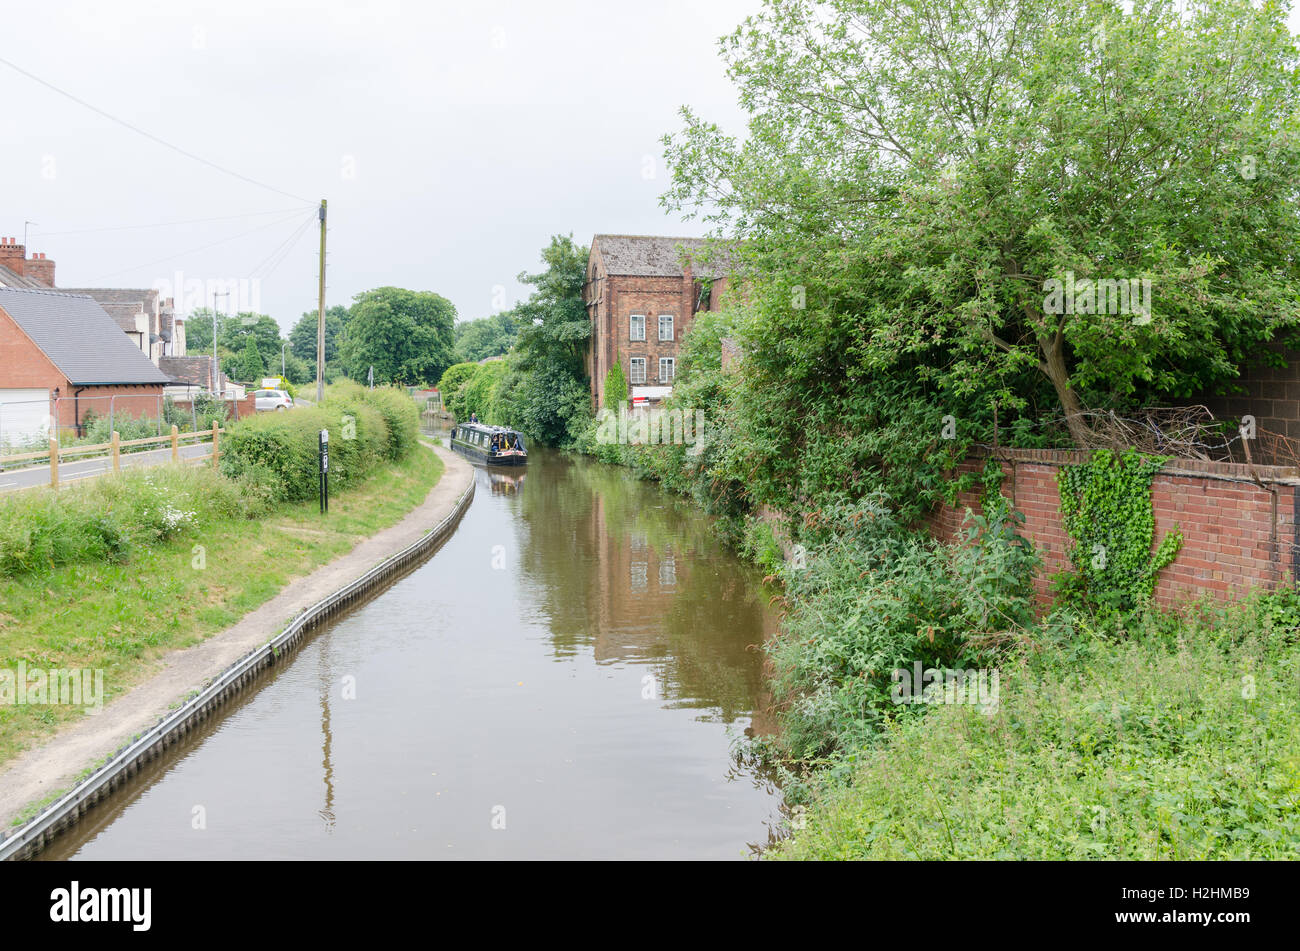 Die Trent und Mersey Kanal durchzieht die Staffordshire Stadt Rugeley Stockfoto